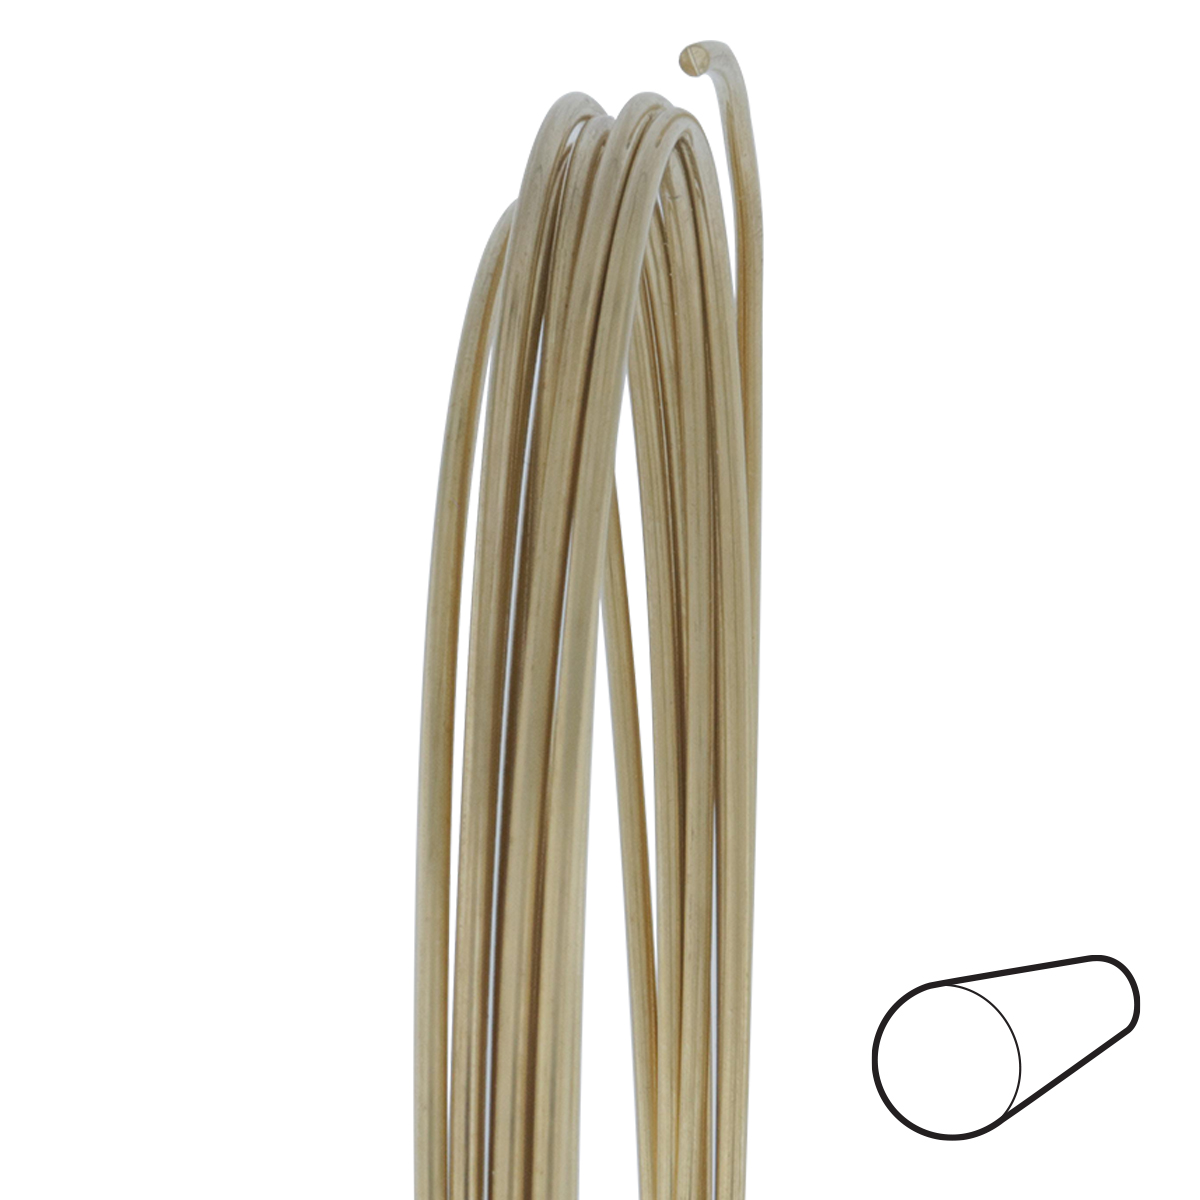 24 Gauge Round Half Hard Red Brass Wire: Wire Jewelry, Wire Wrap Tutorials